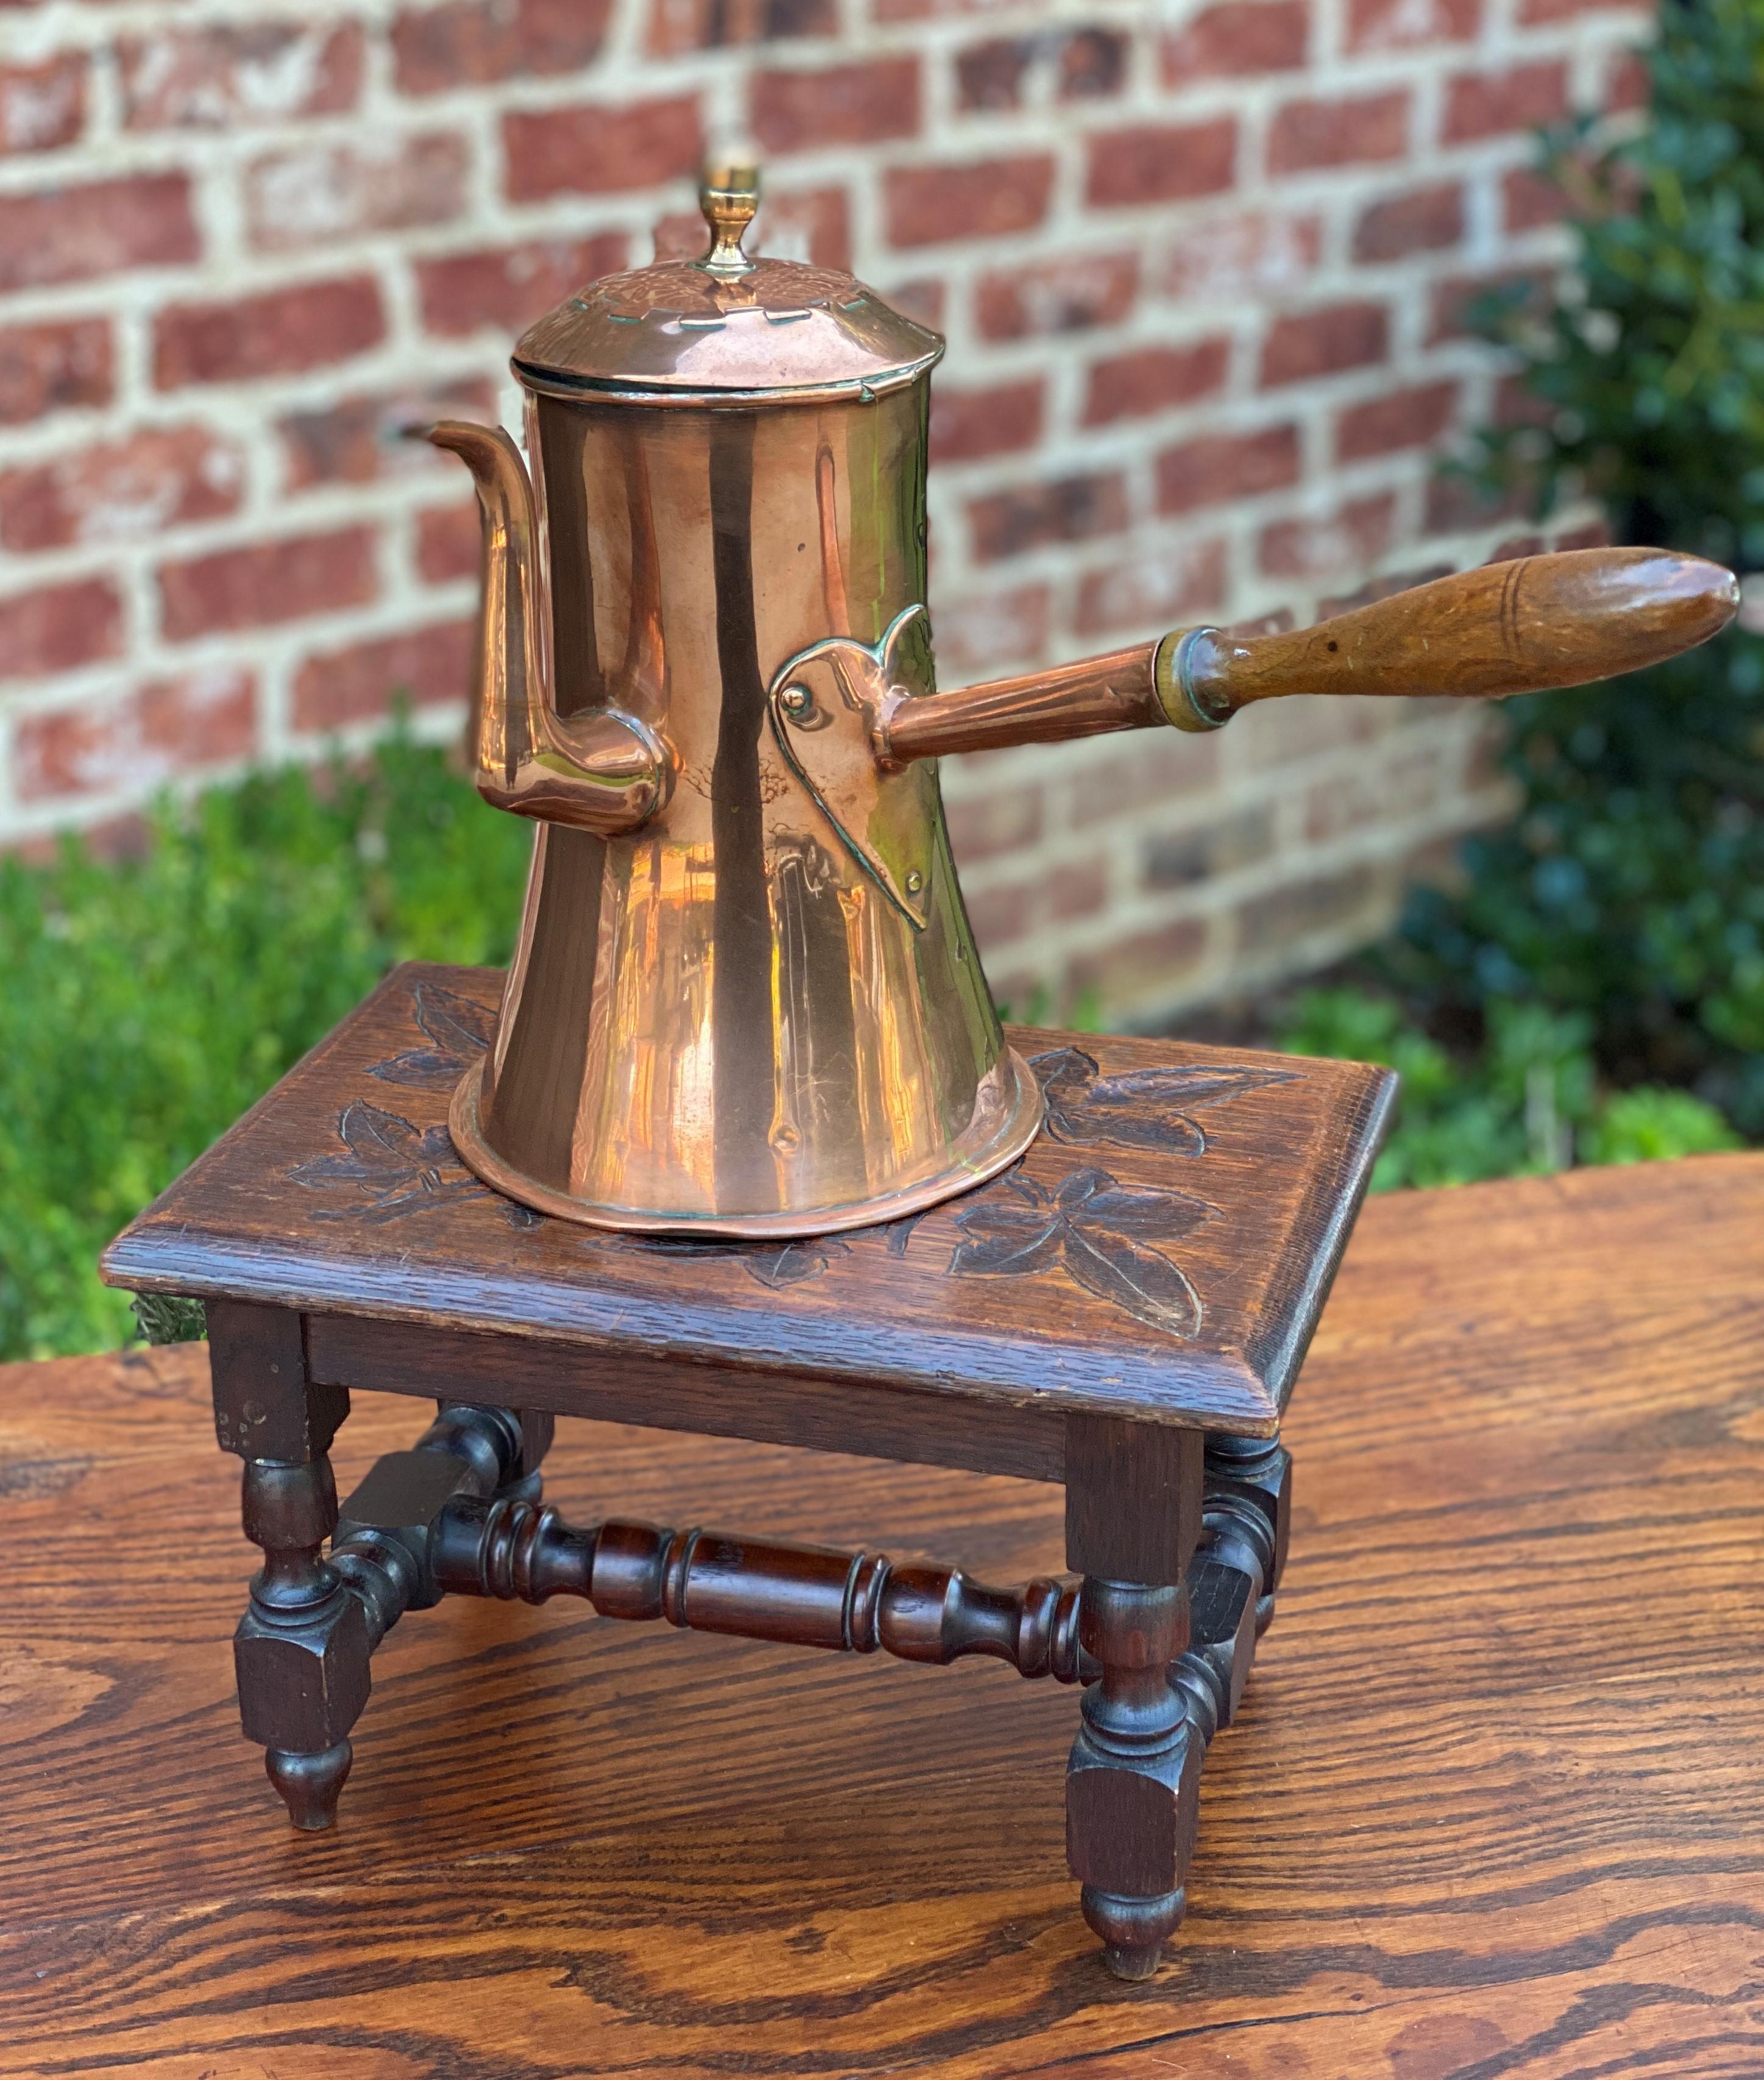 Antique English Copper Tea Kettle Pitcher Hand Seamed Wood Handle Pour Spout 4